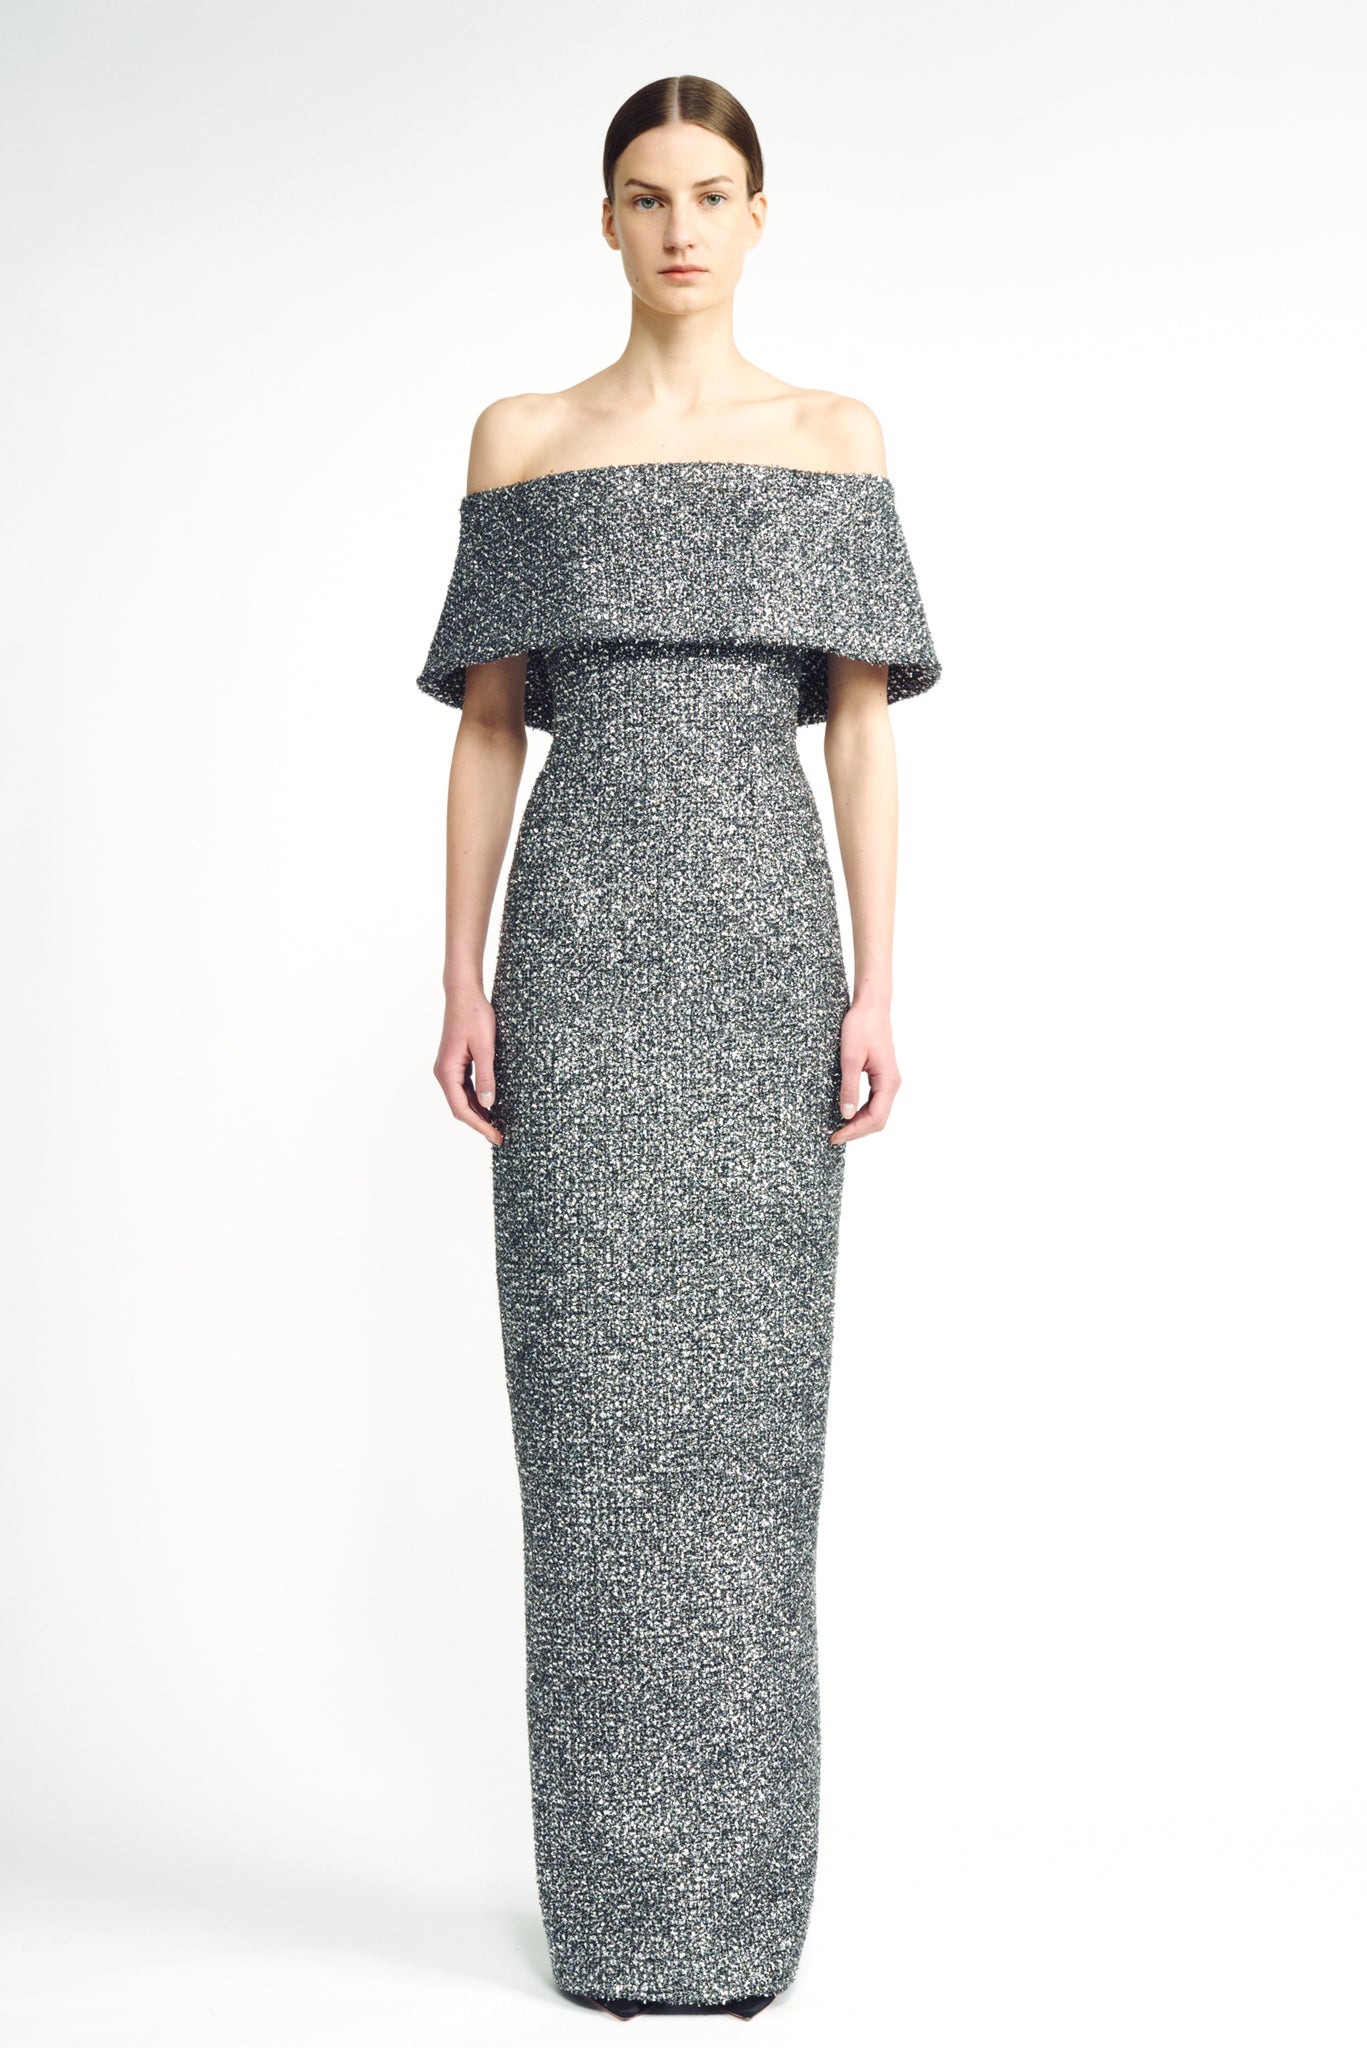 Emmanuella Dress | SIlver Tweed Lame Column Dress | Emilia Wickstead